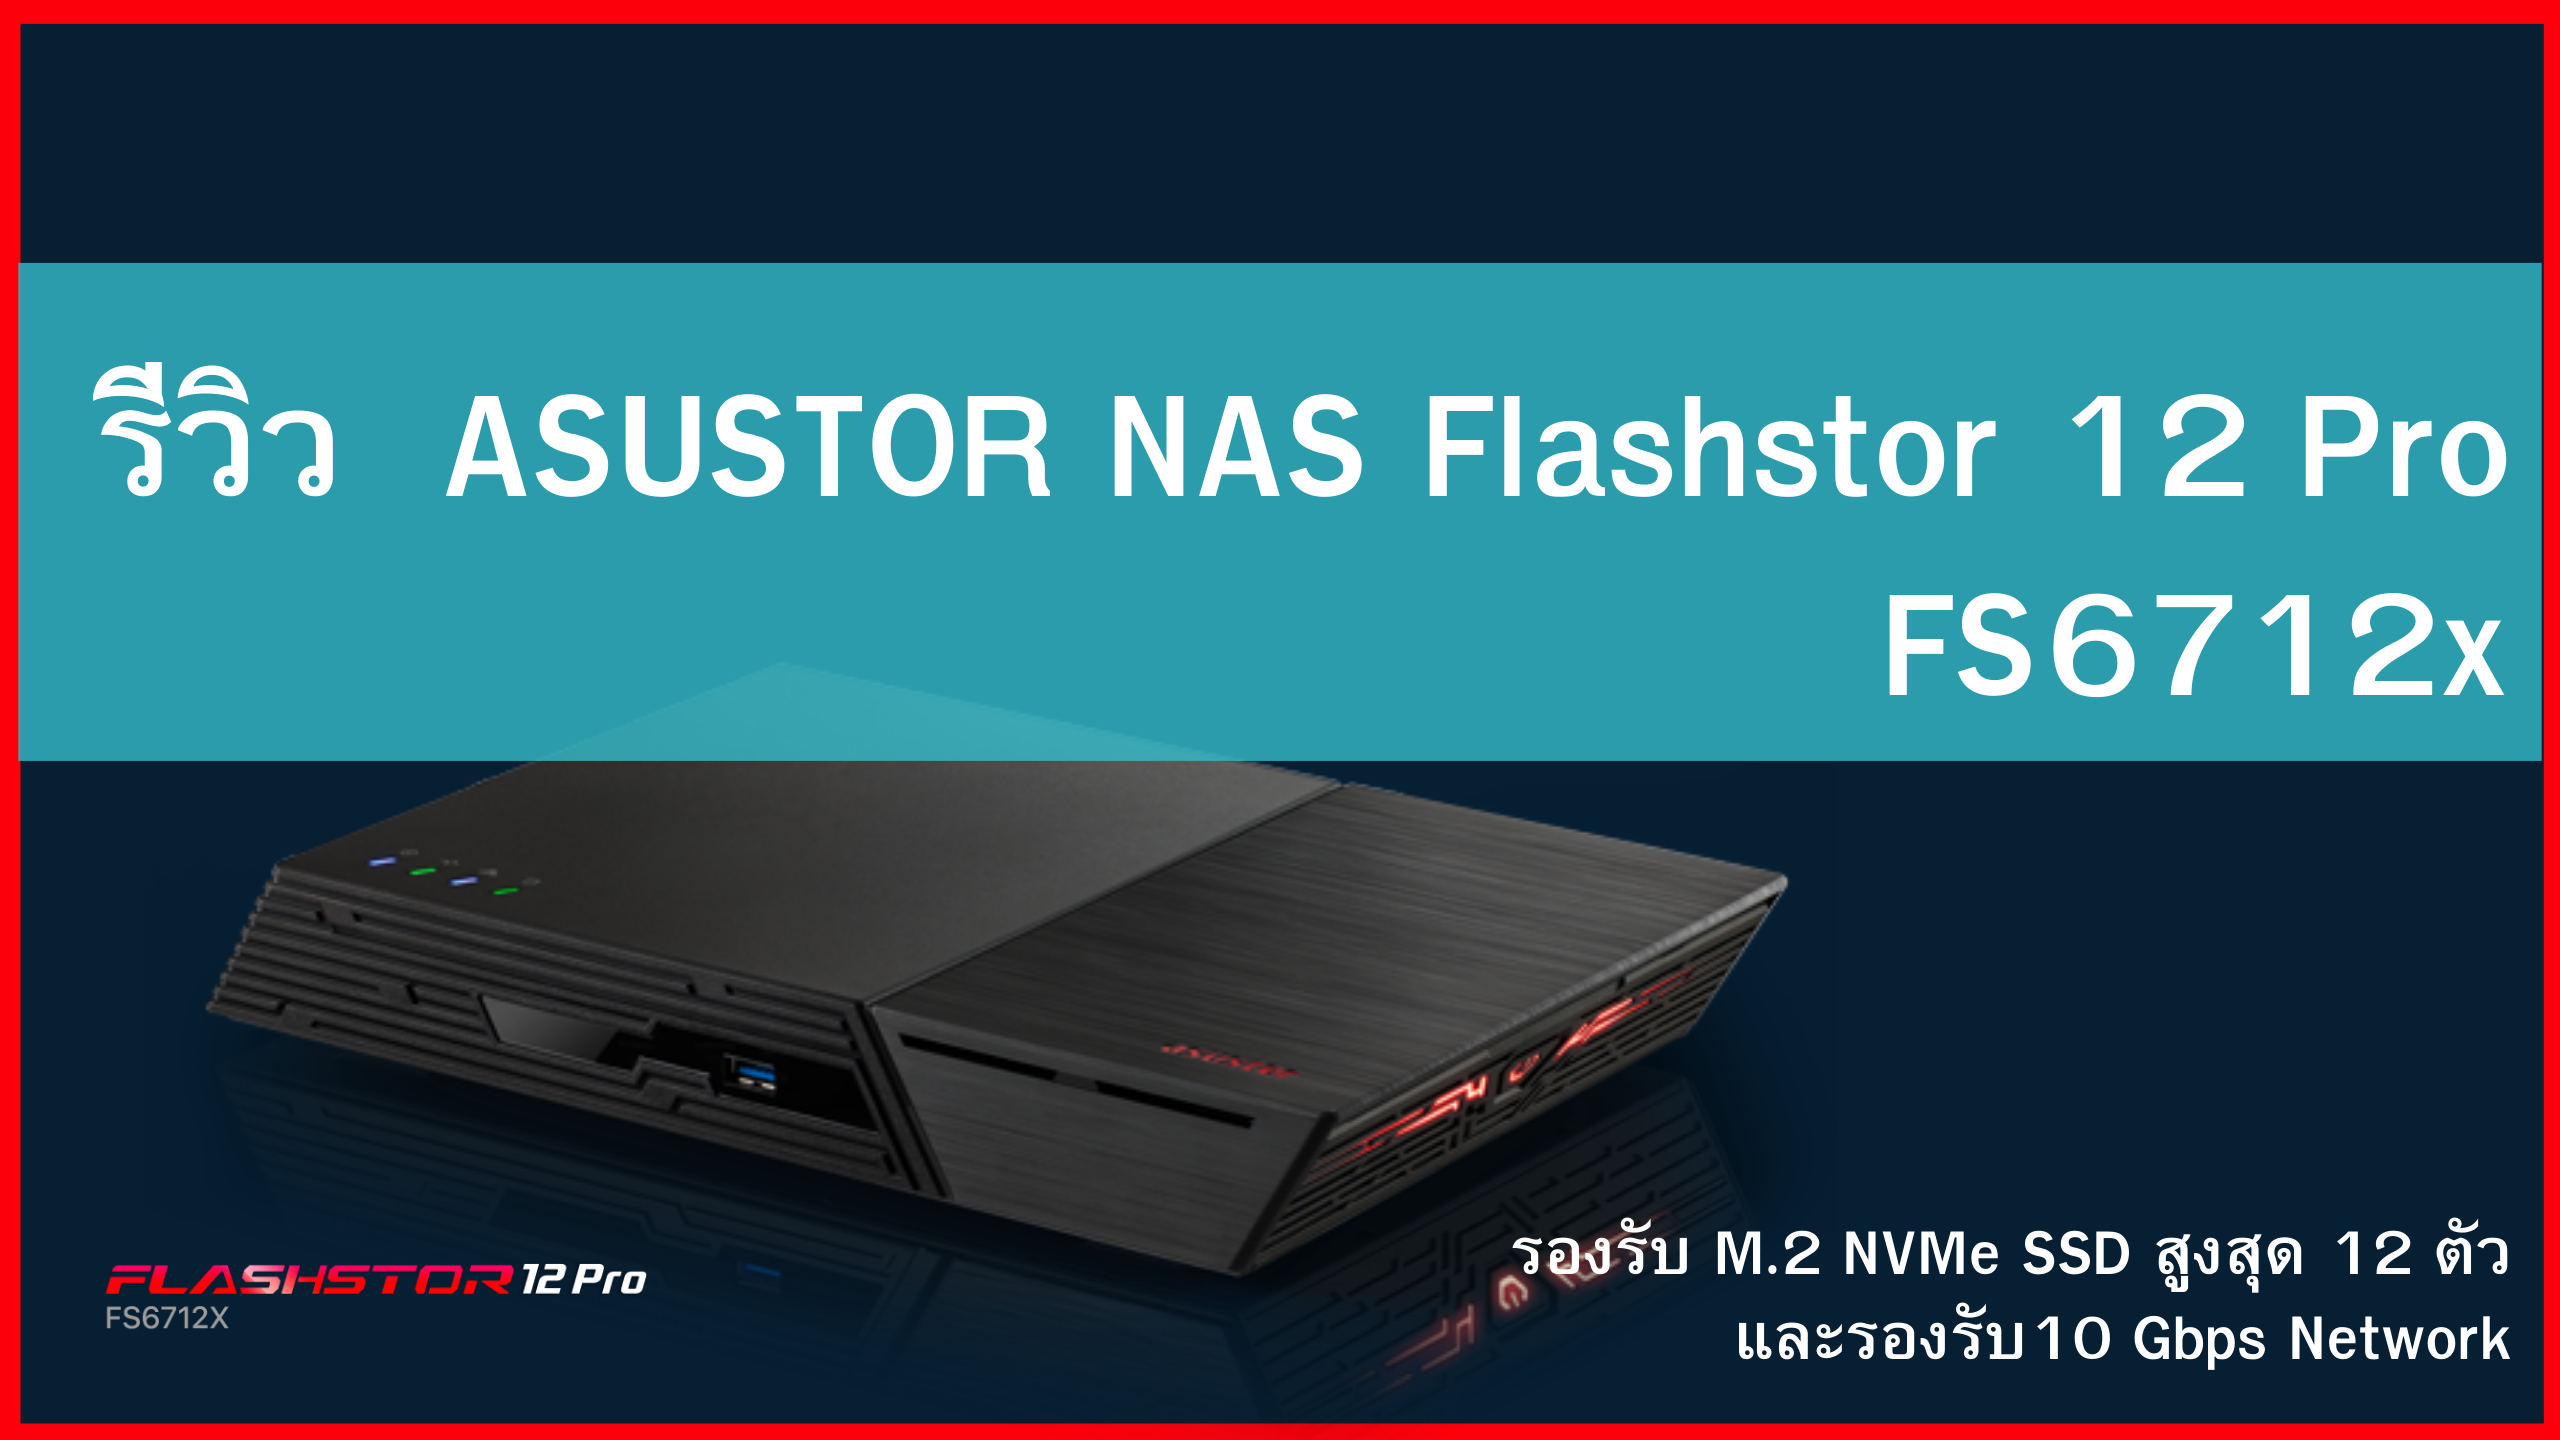 รีวิว ASUSTOR NAS Flashstor 12 Pro FS6712x รองรับ M.2 NVMe SSD สูงสุด 12 ตัว และรองรับ10 Gbps Network